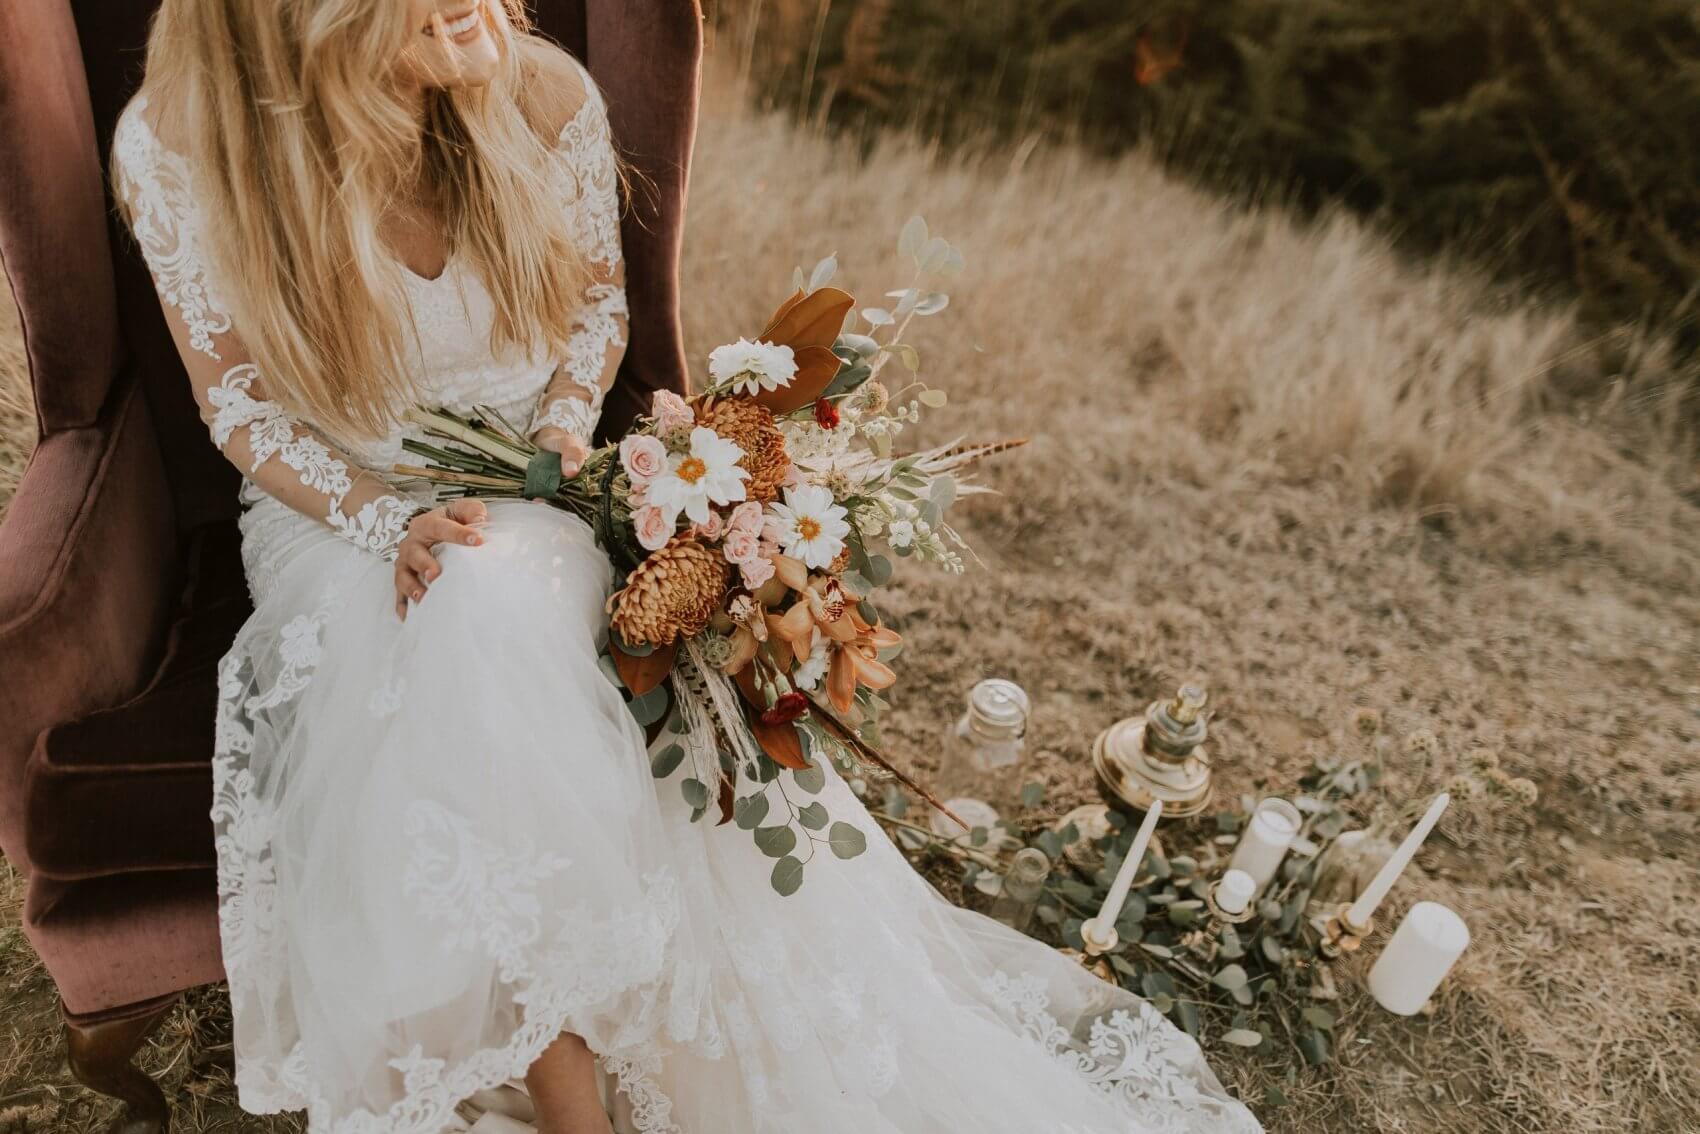 Women in Wedding Dress Holding Flowers